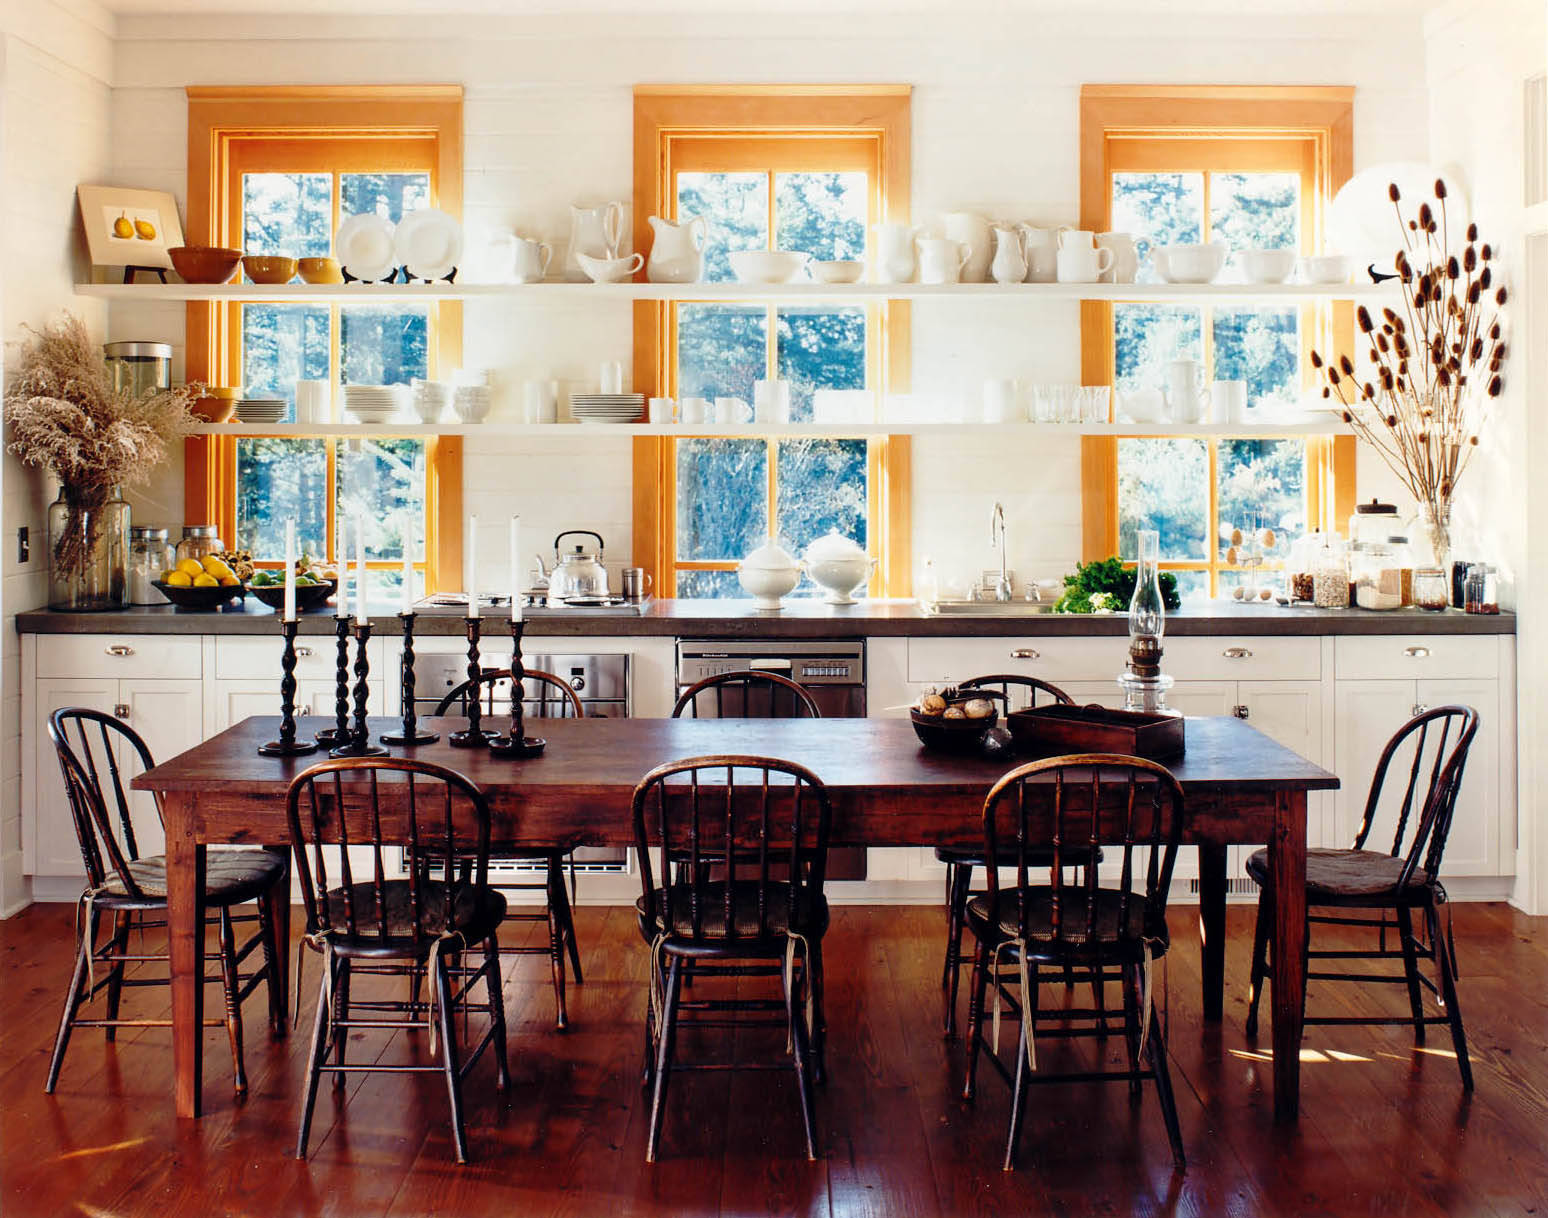 Unique sunny. Столовая интерьер. Фотообои увеличивающие пространство для кухни. Кухня с окном для раздачи. Окно раздачи в доме.